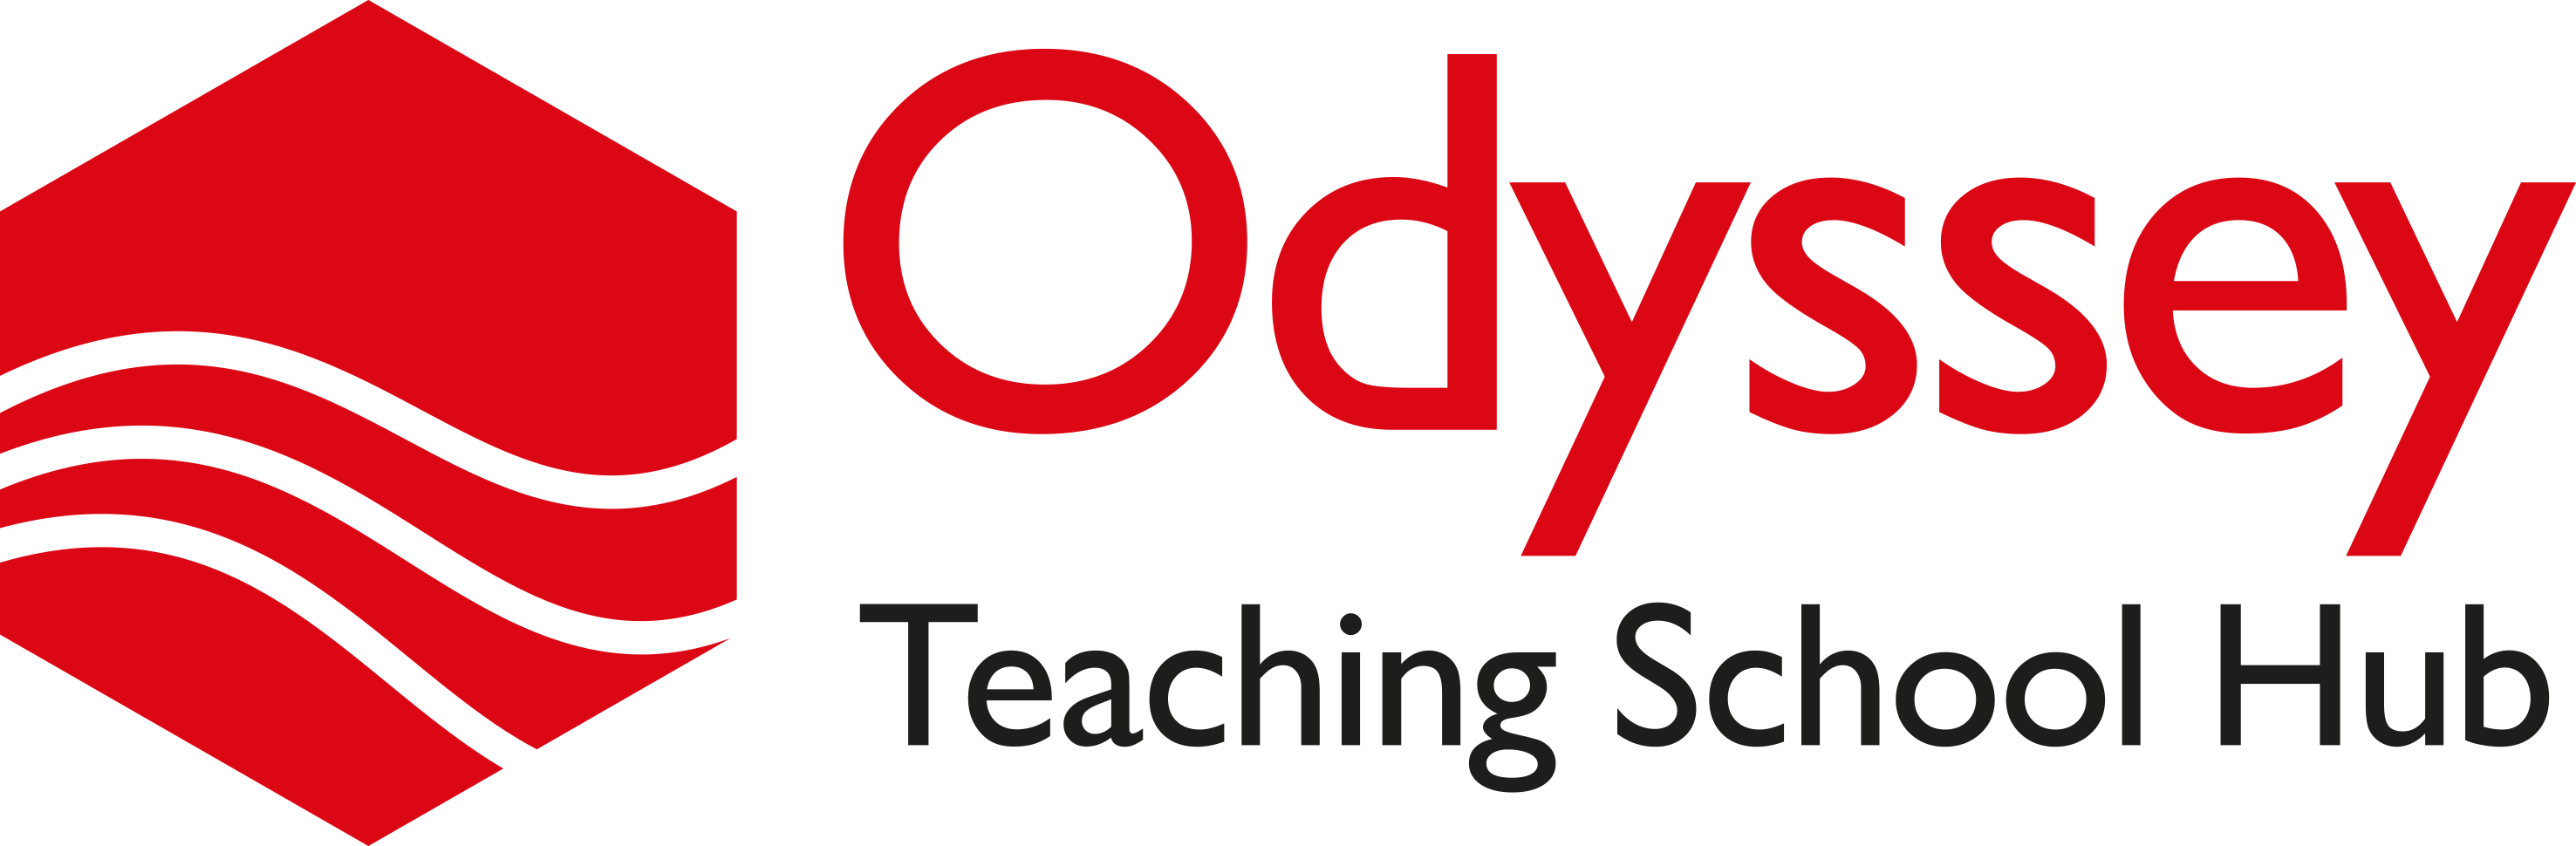 Odyssey Teaching School Hub 